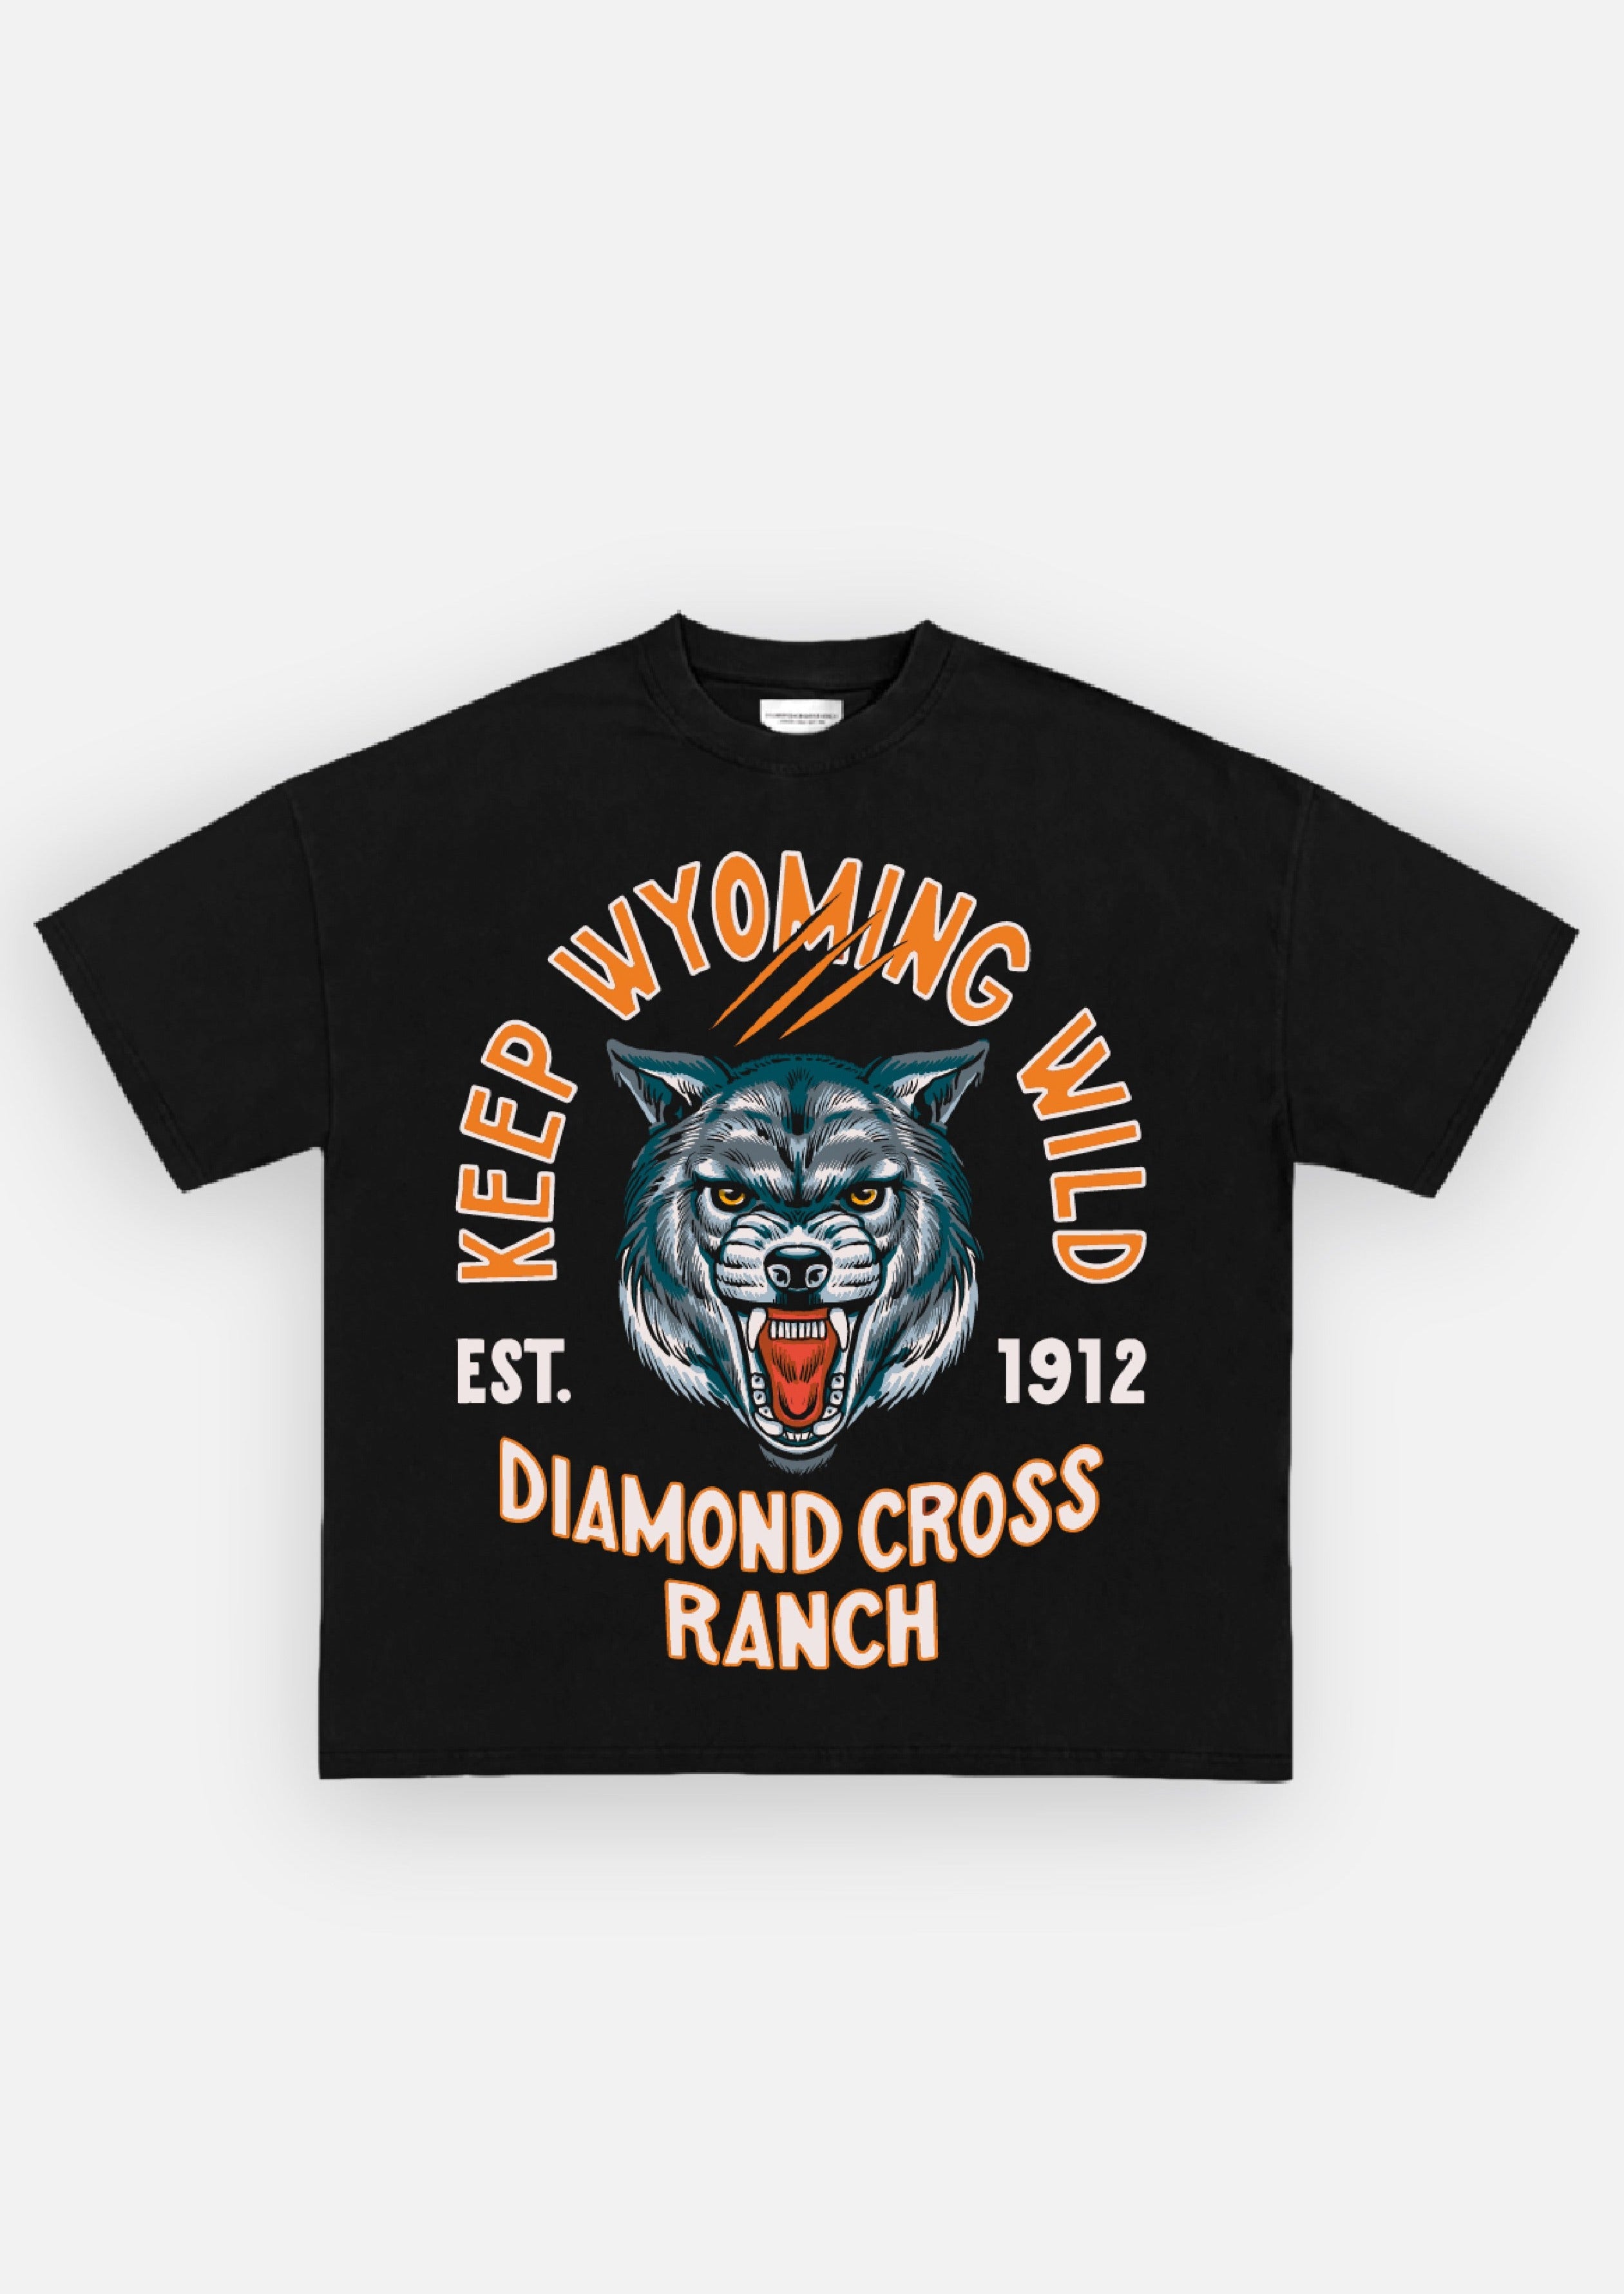 Diamond Cross Ranch Yellowstone Wyoming Black Wild Wolf T-Shirt 